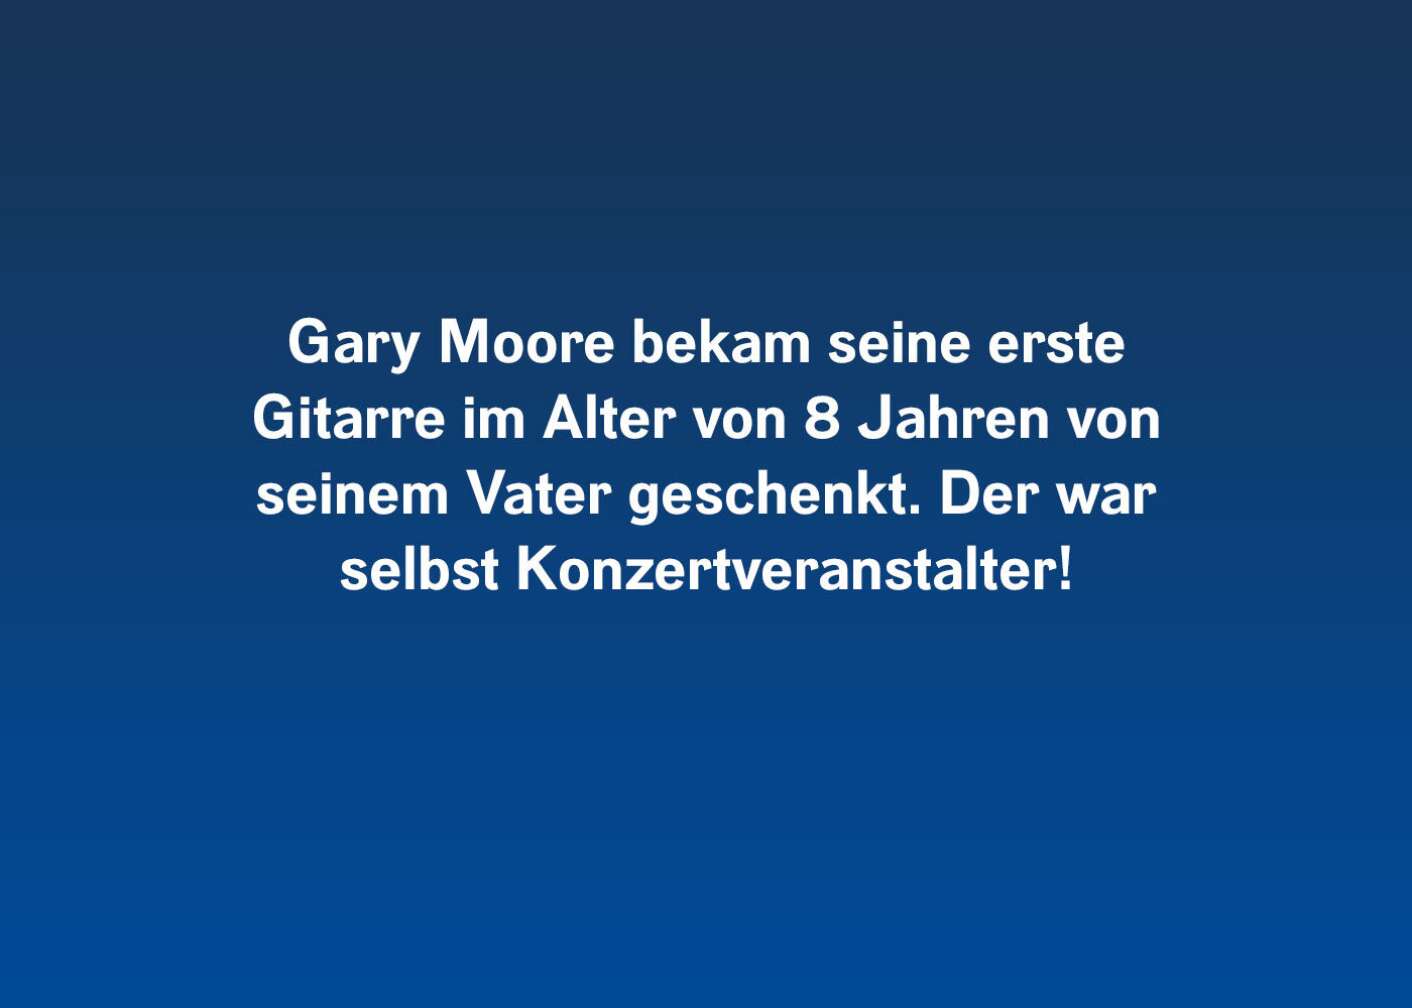 7 Fakten über Gary Moore